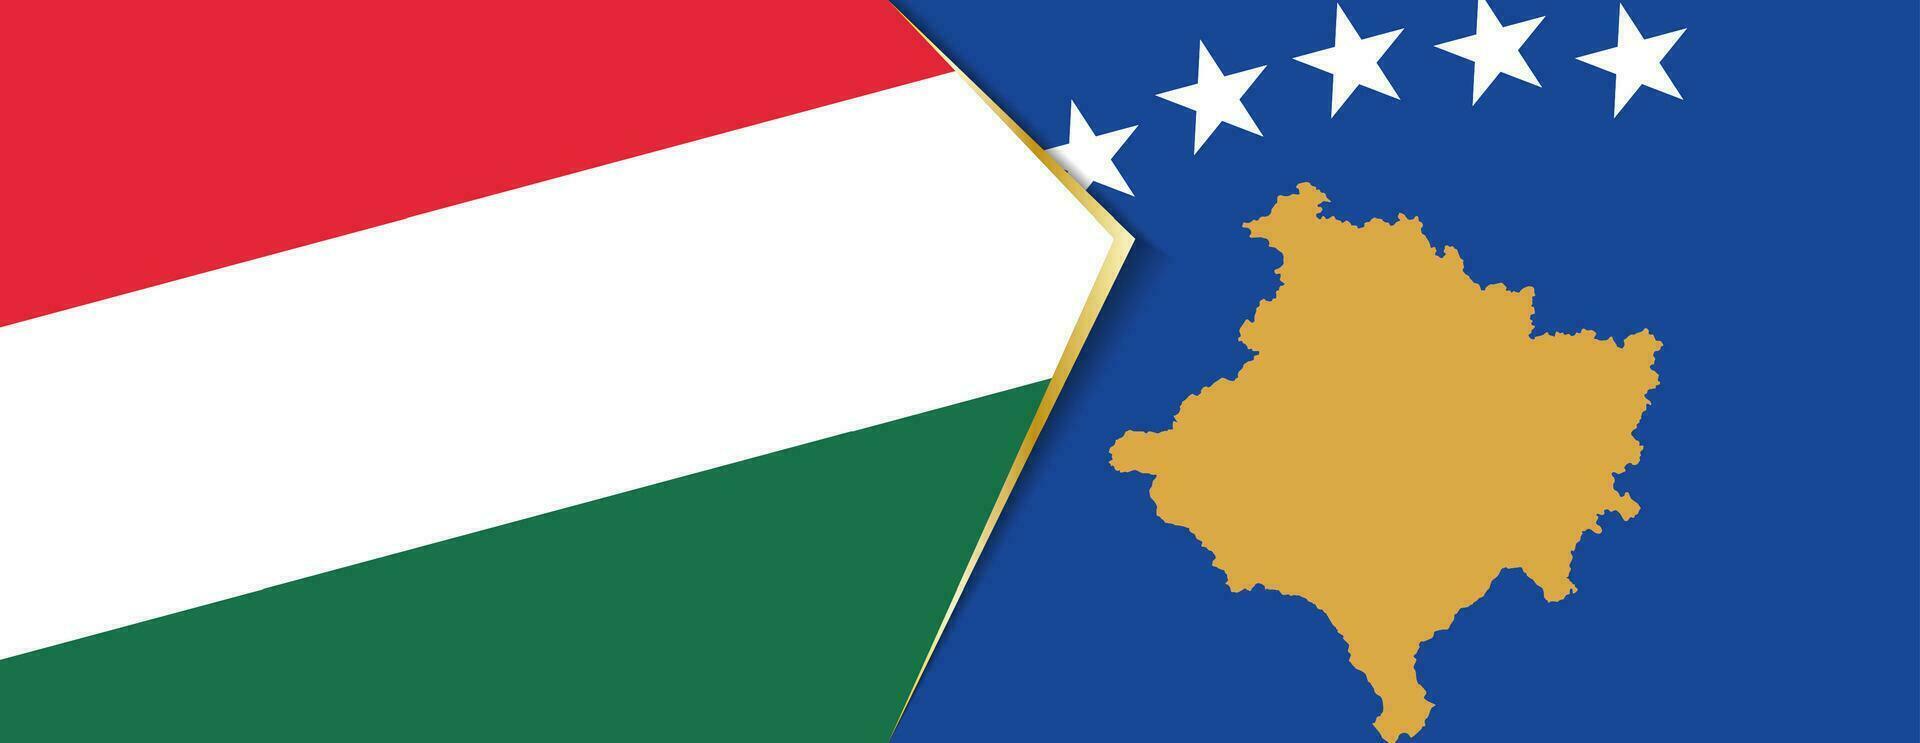 Ungarn und kosovo Flaggen, zwei Vektor Flaggen.